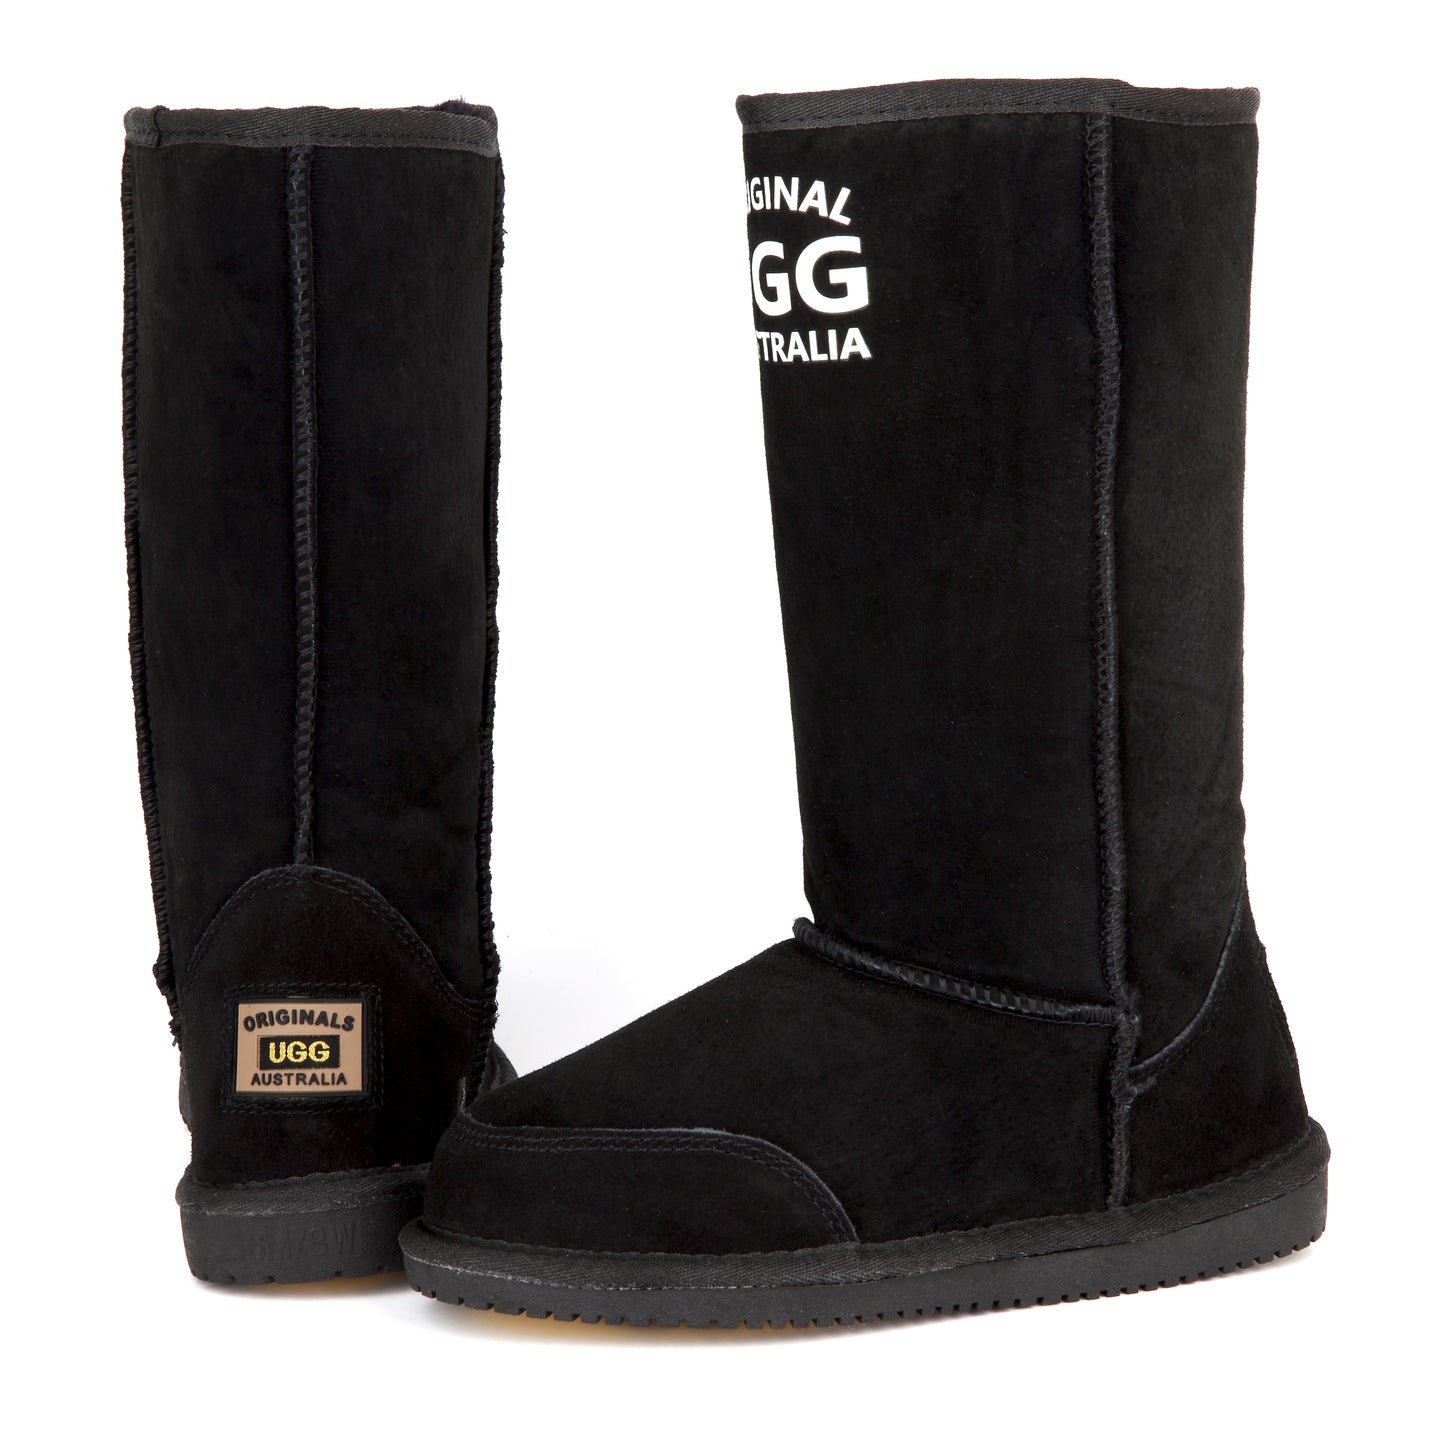 Originals Ugg Australia Long Logo Boots Black